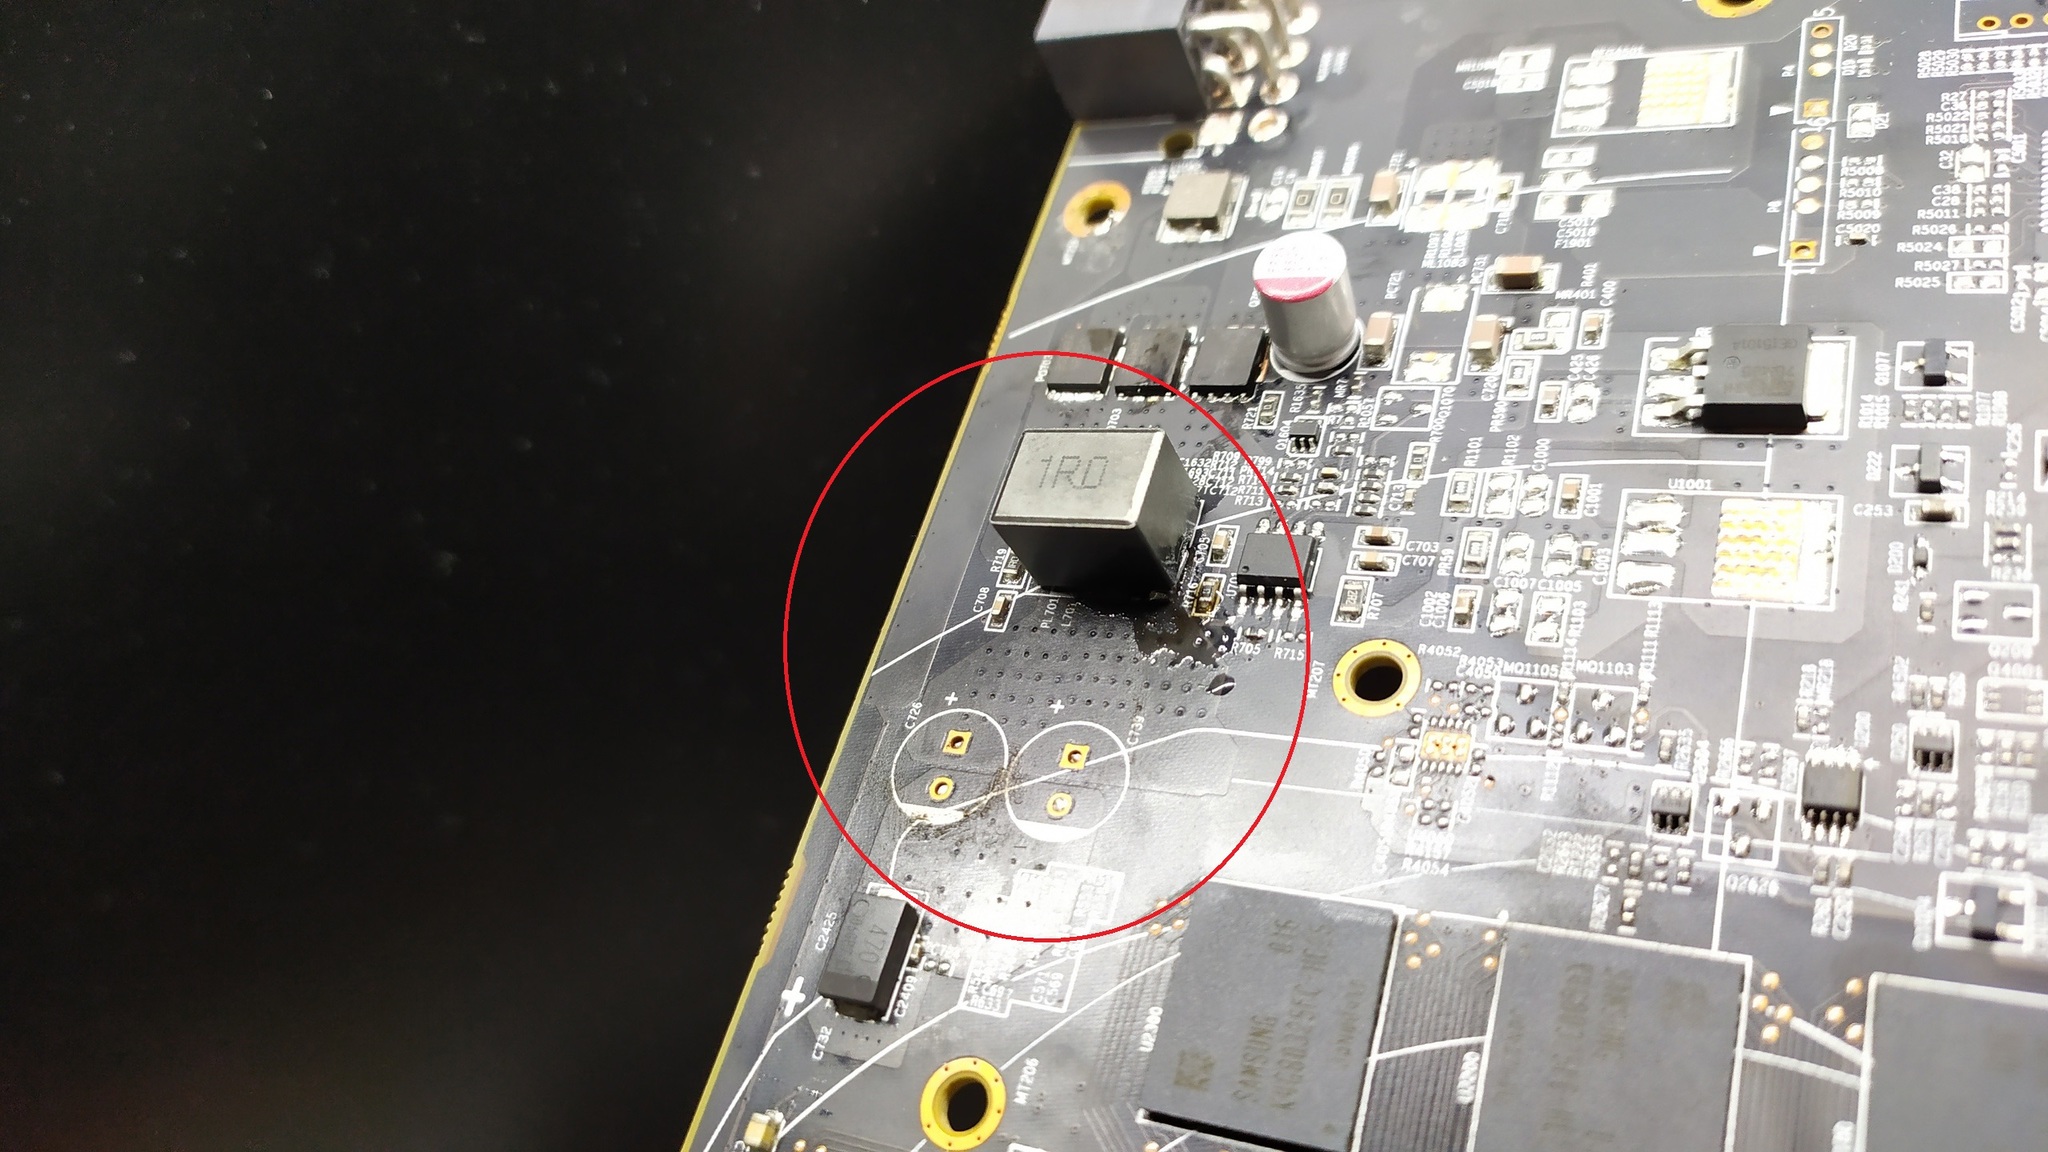 PowerColor RX580 repair or almost broke - My, Repair, Video card, Rx 580, Longpost